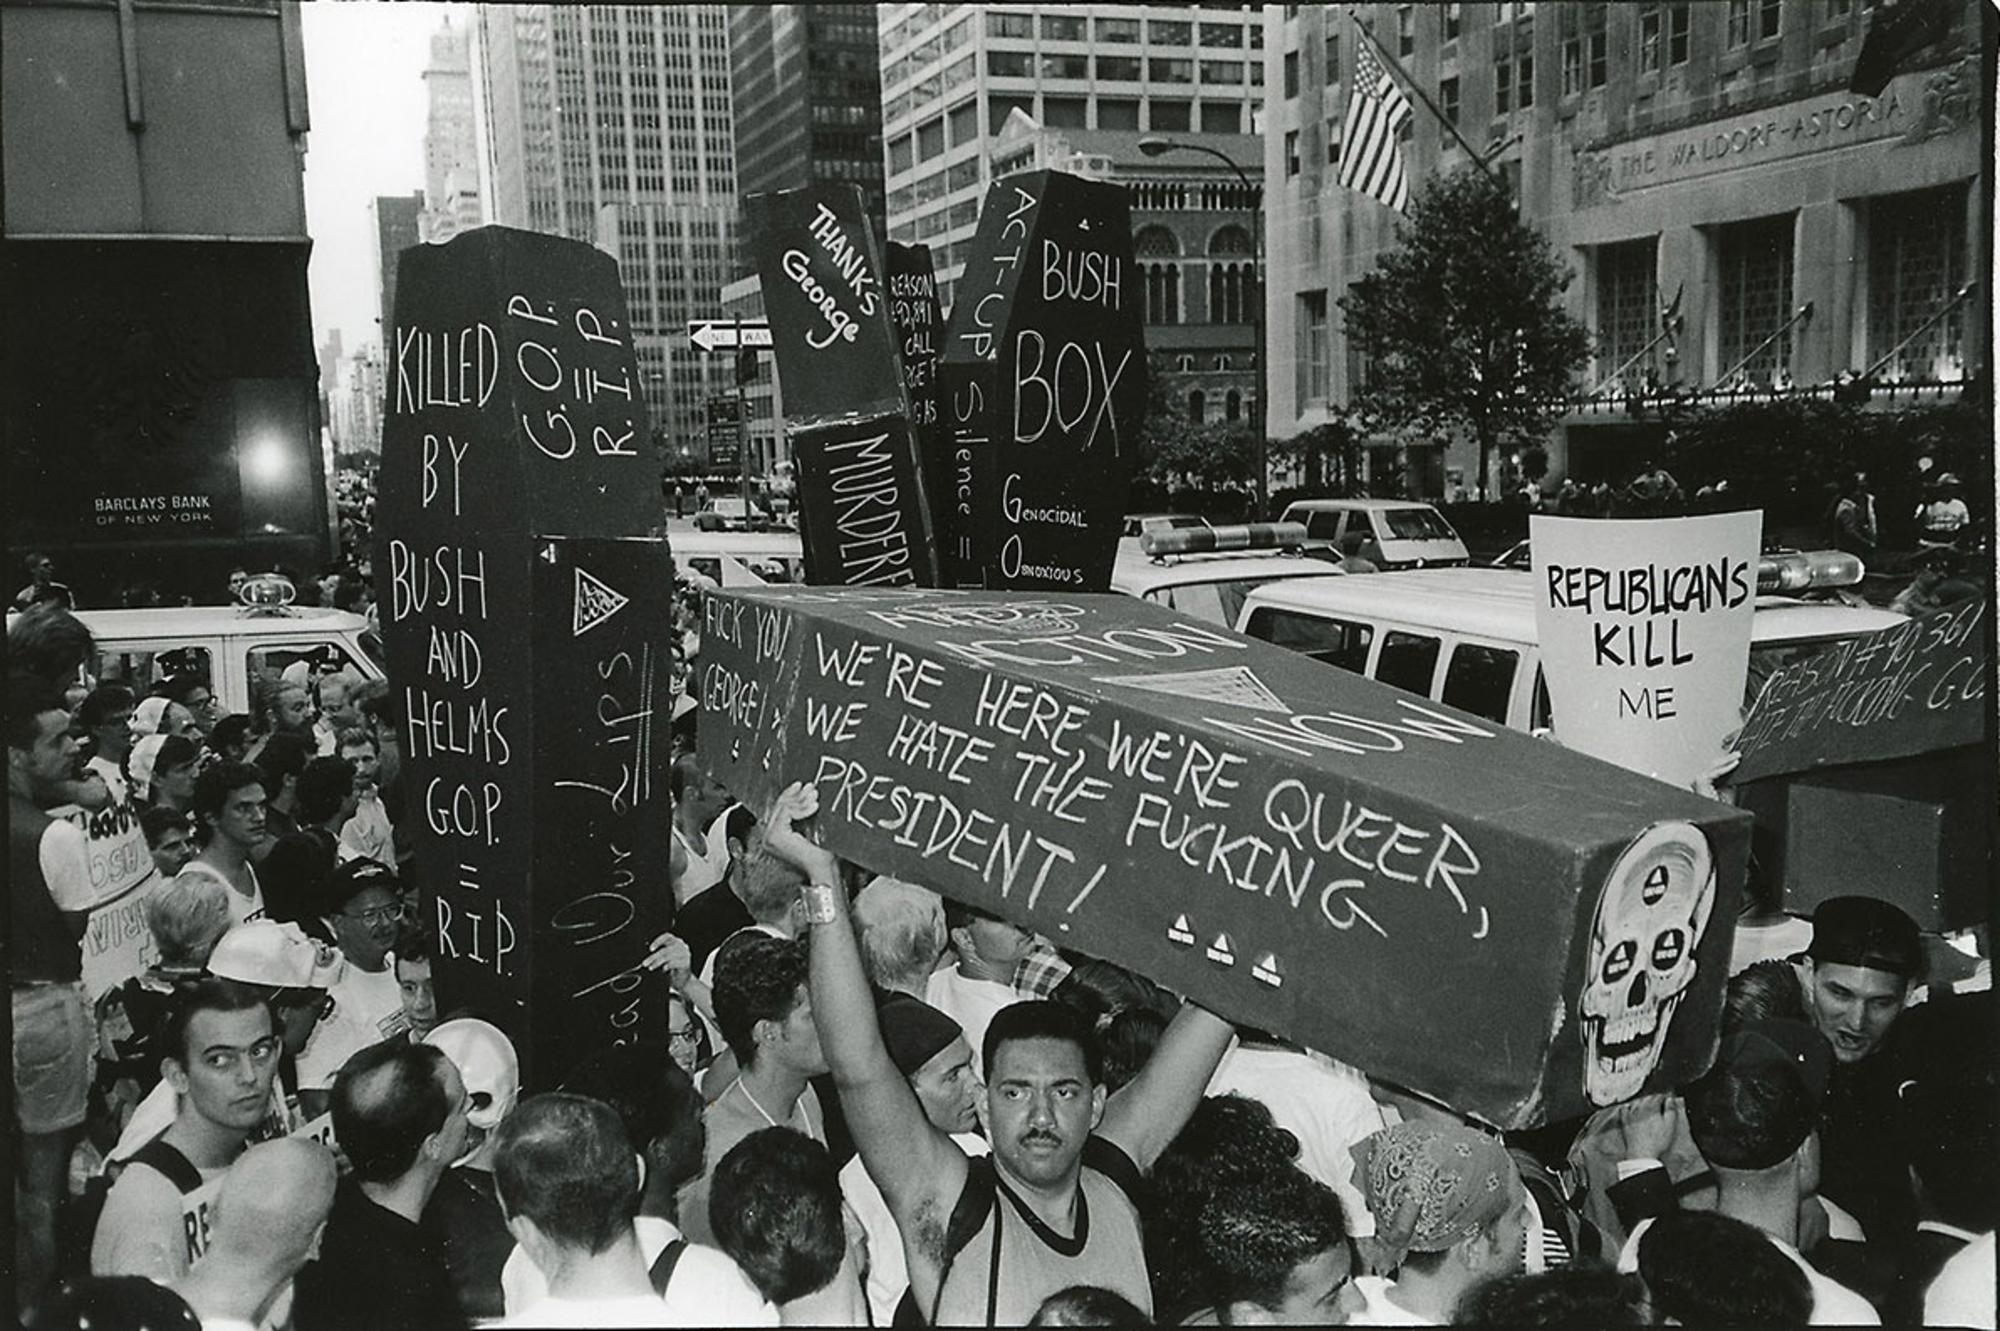 Concentración de ACT UP en Nueva York en 1990